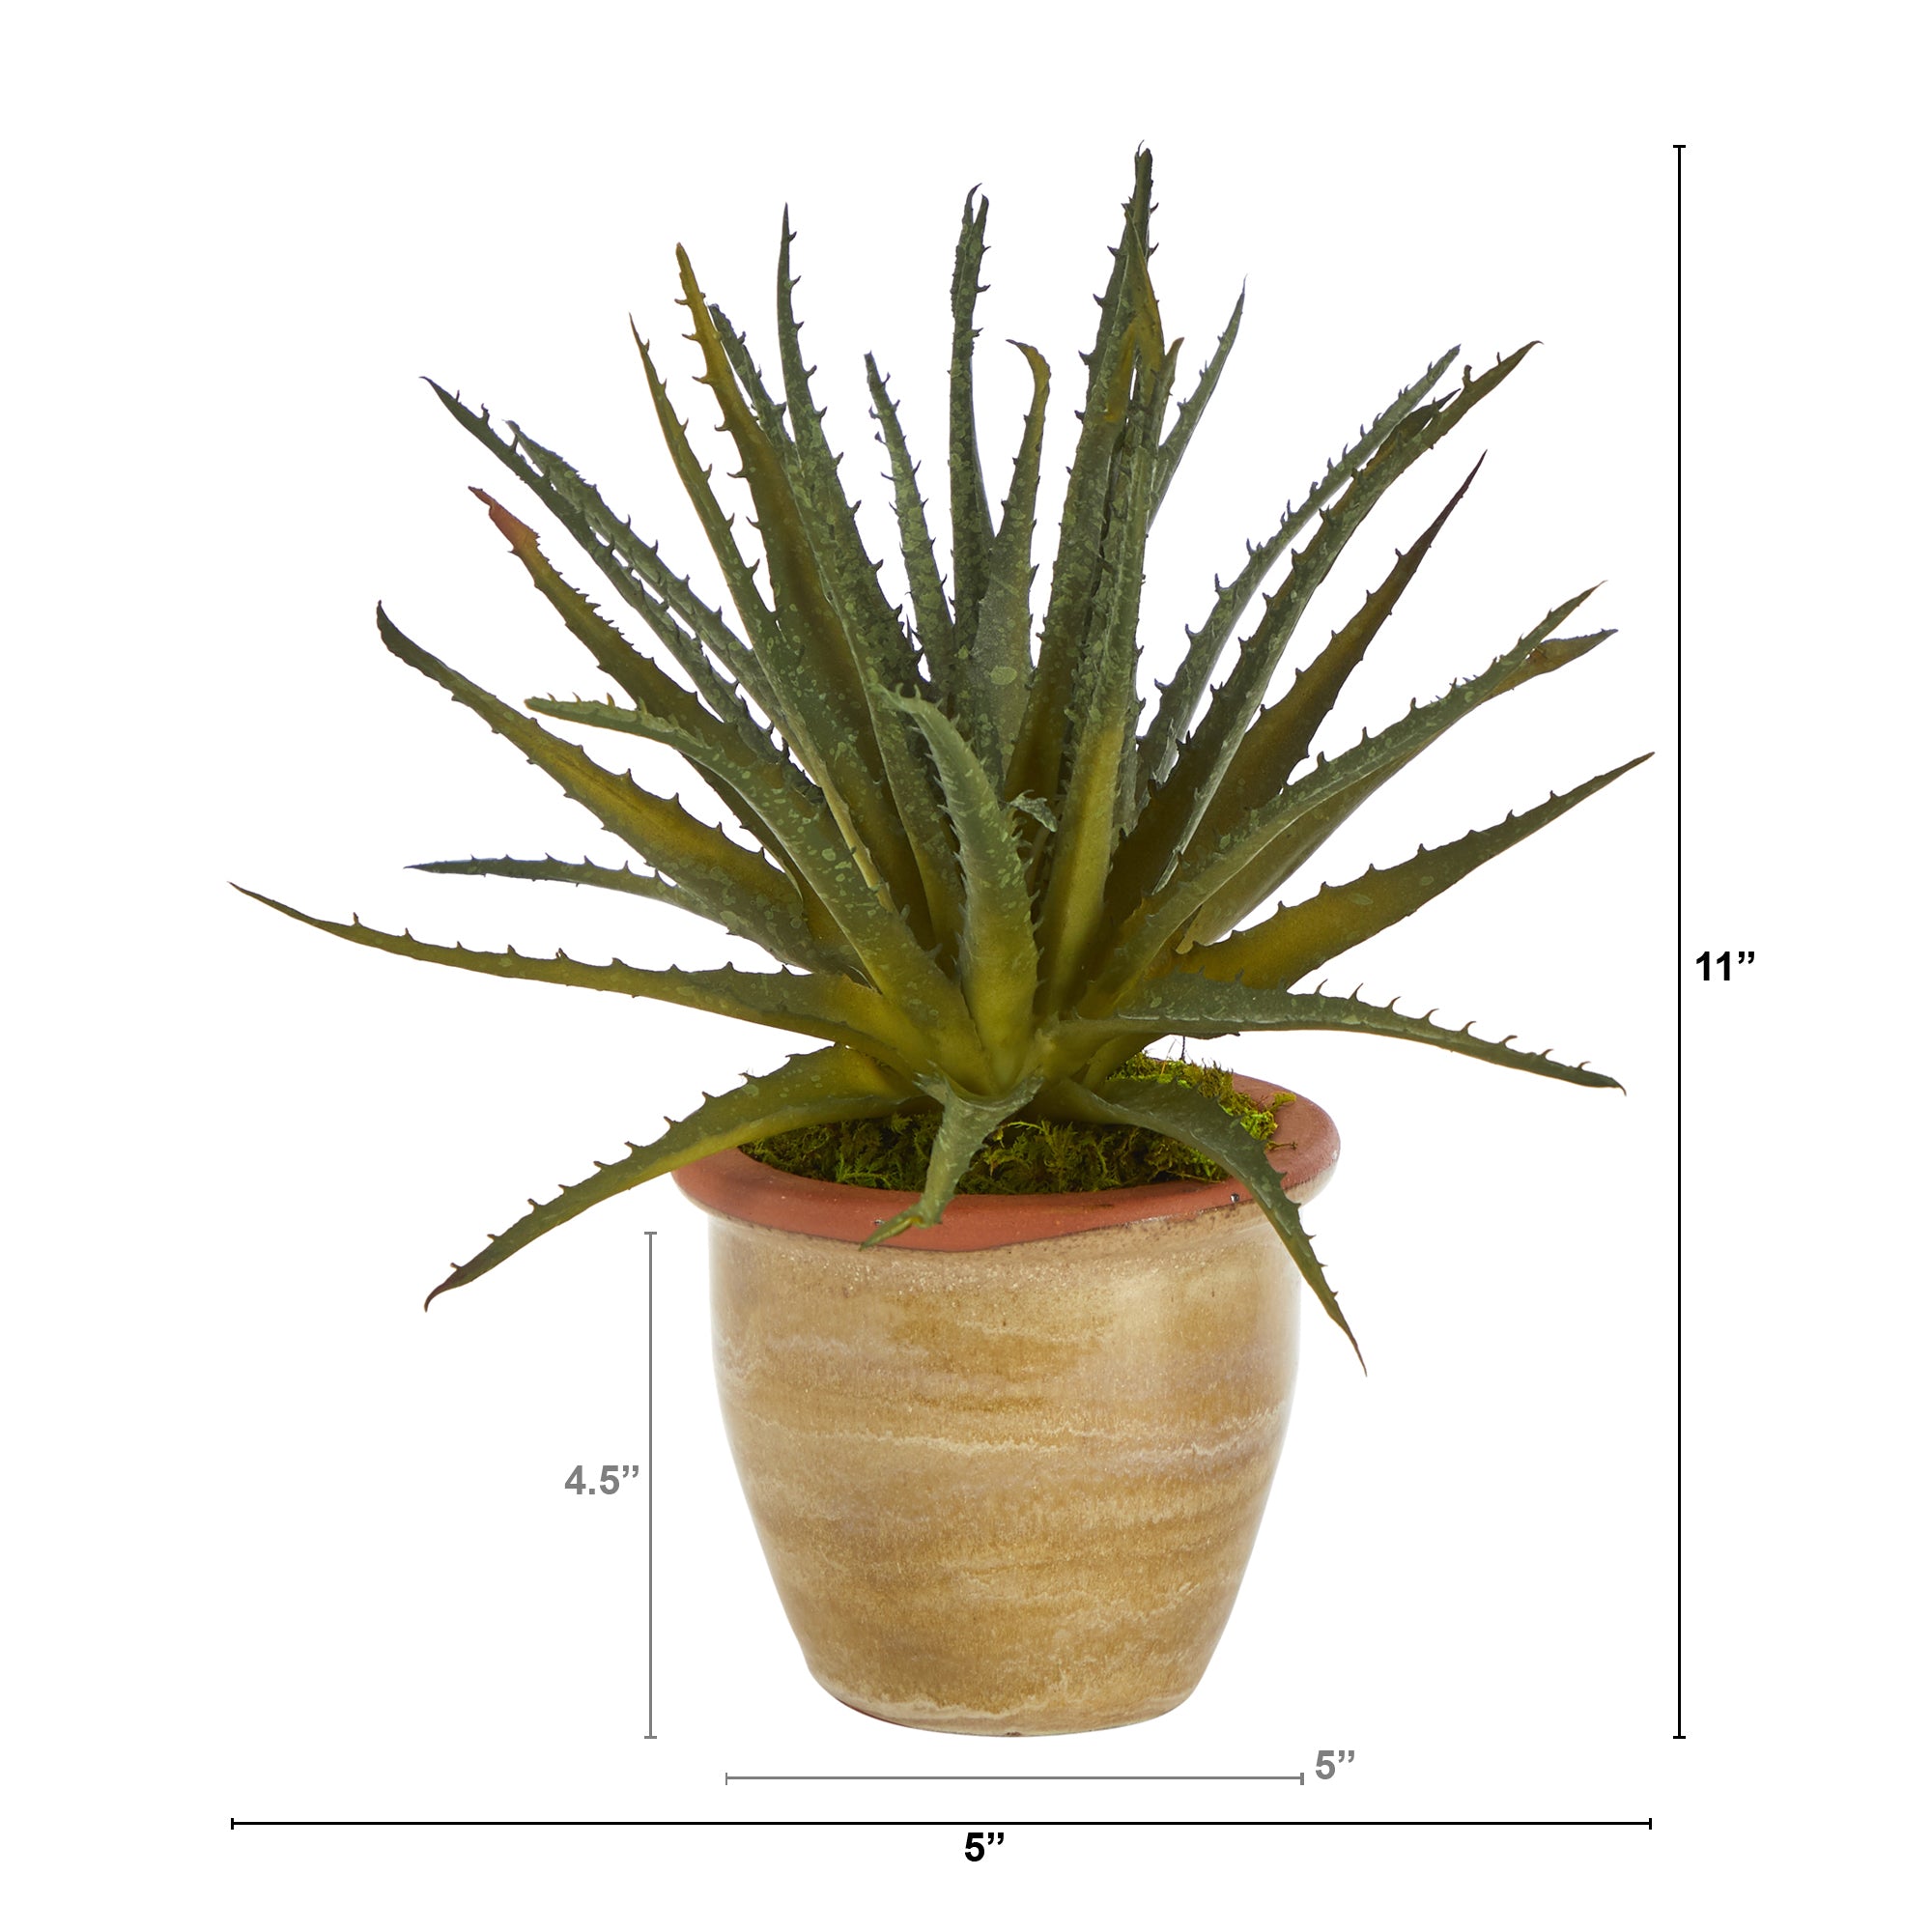 Aloe Artificial Plant in Ceramic Planter, 11”